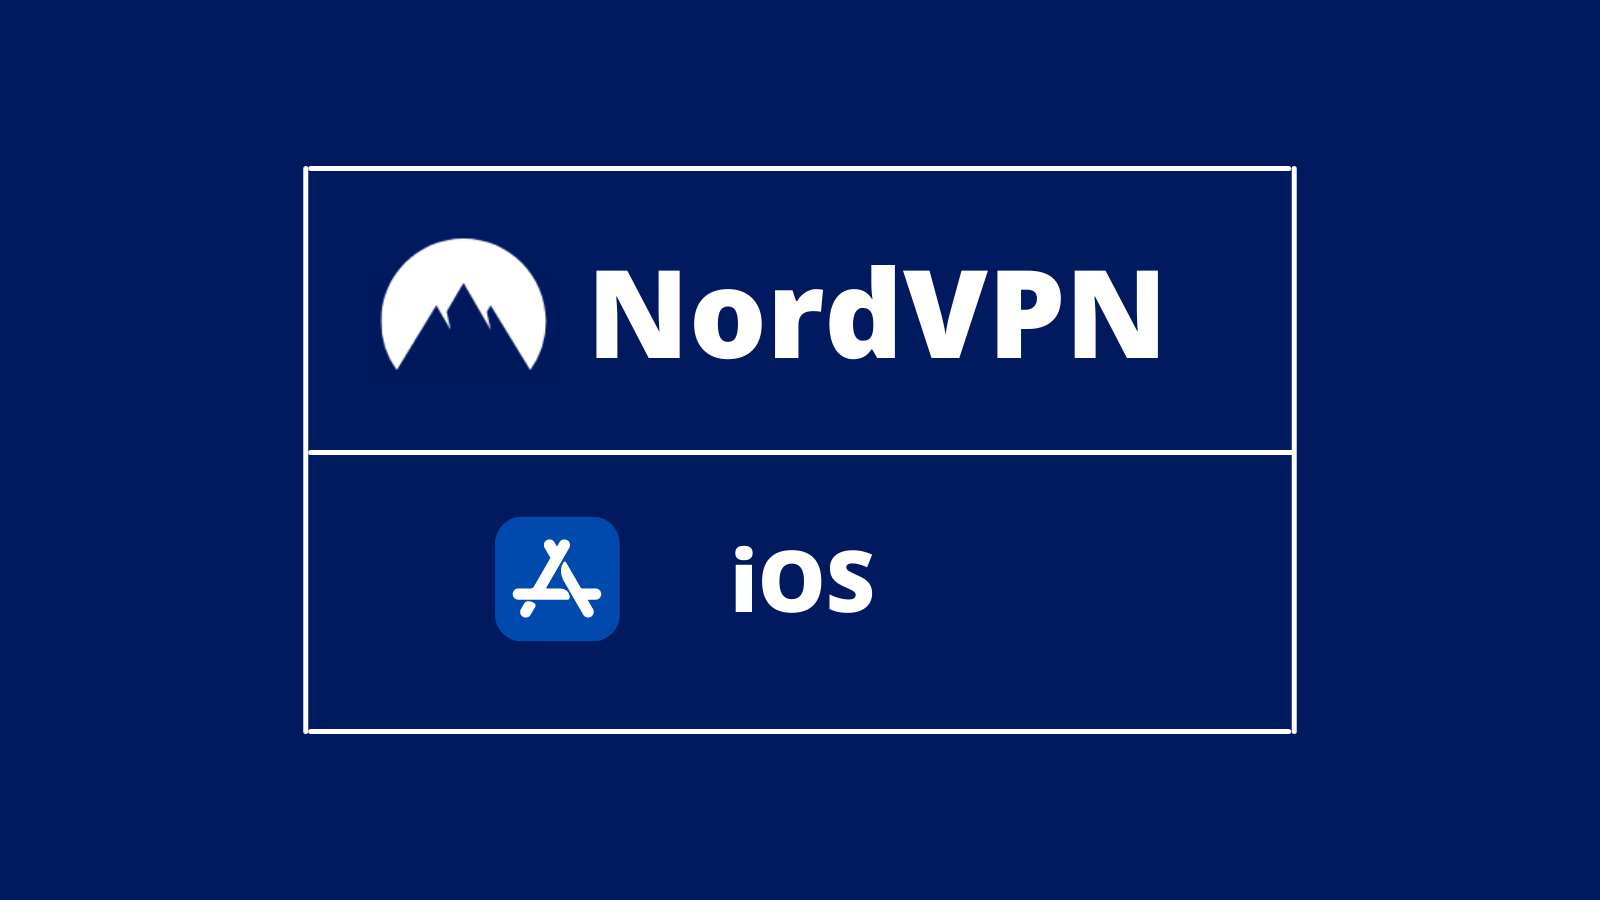 nordvpn download